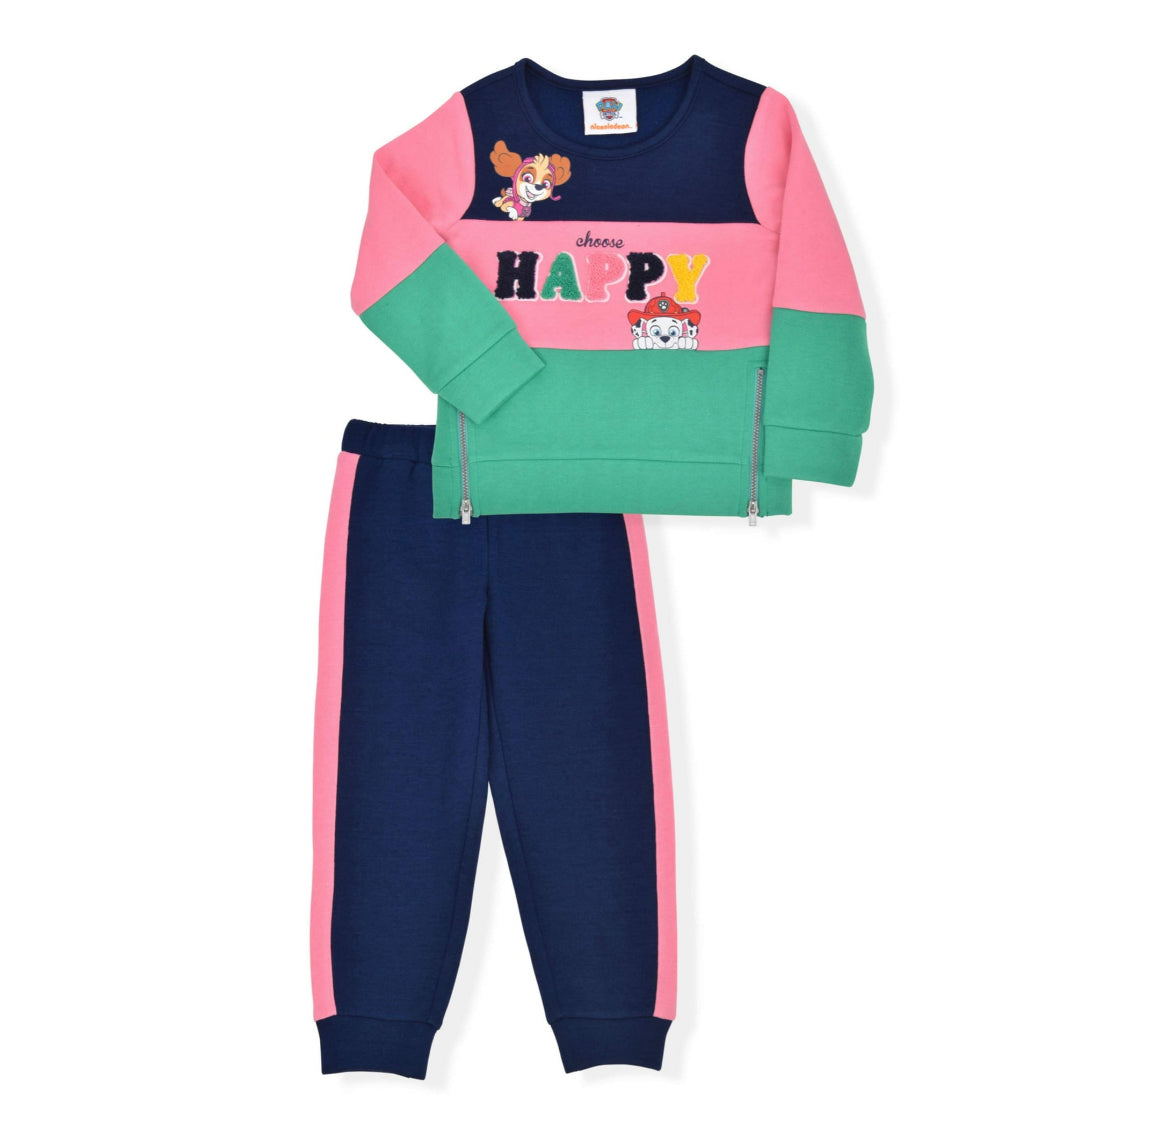 Paw Patrol Baby Girls & Toddler Girls Fleece Sweatshirt & Sweatpants, 2pc Outfit Set